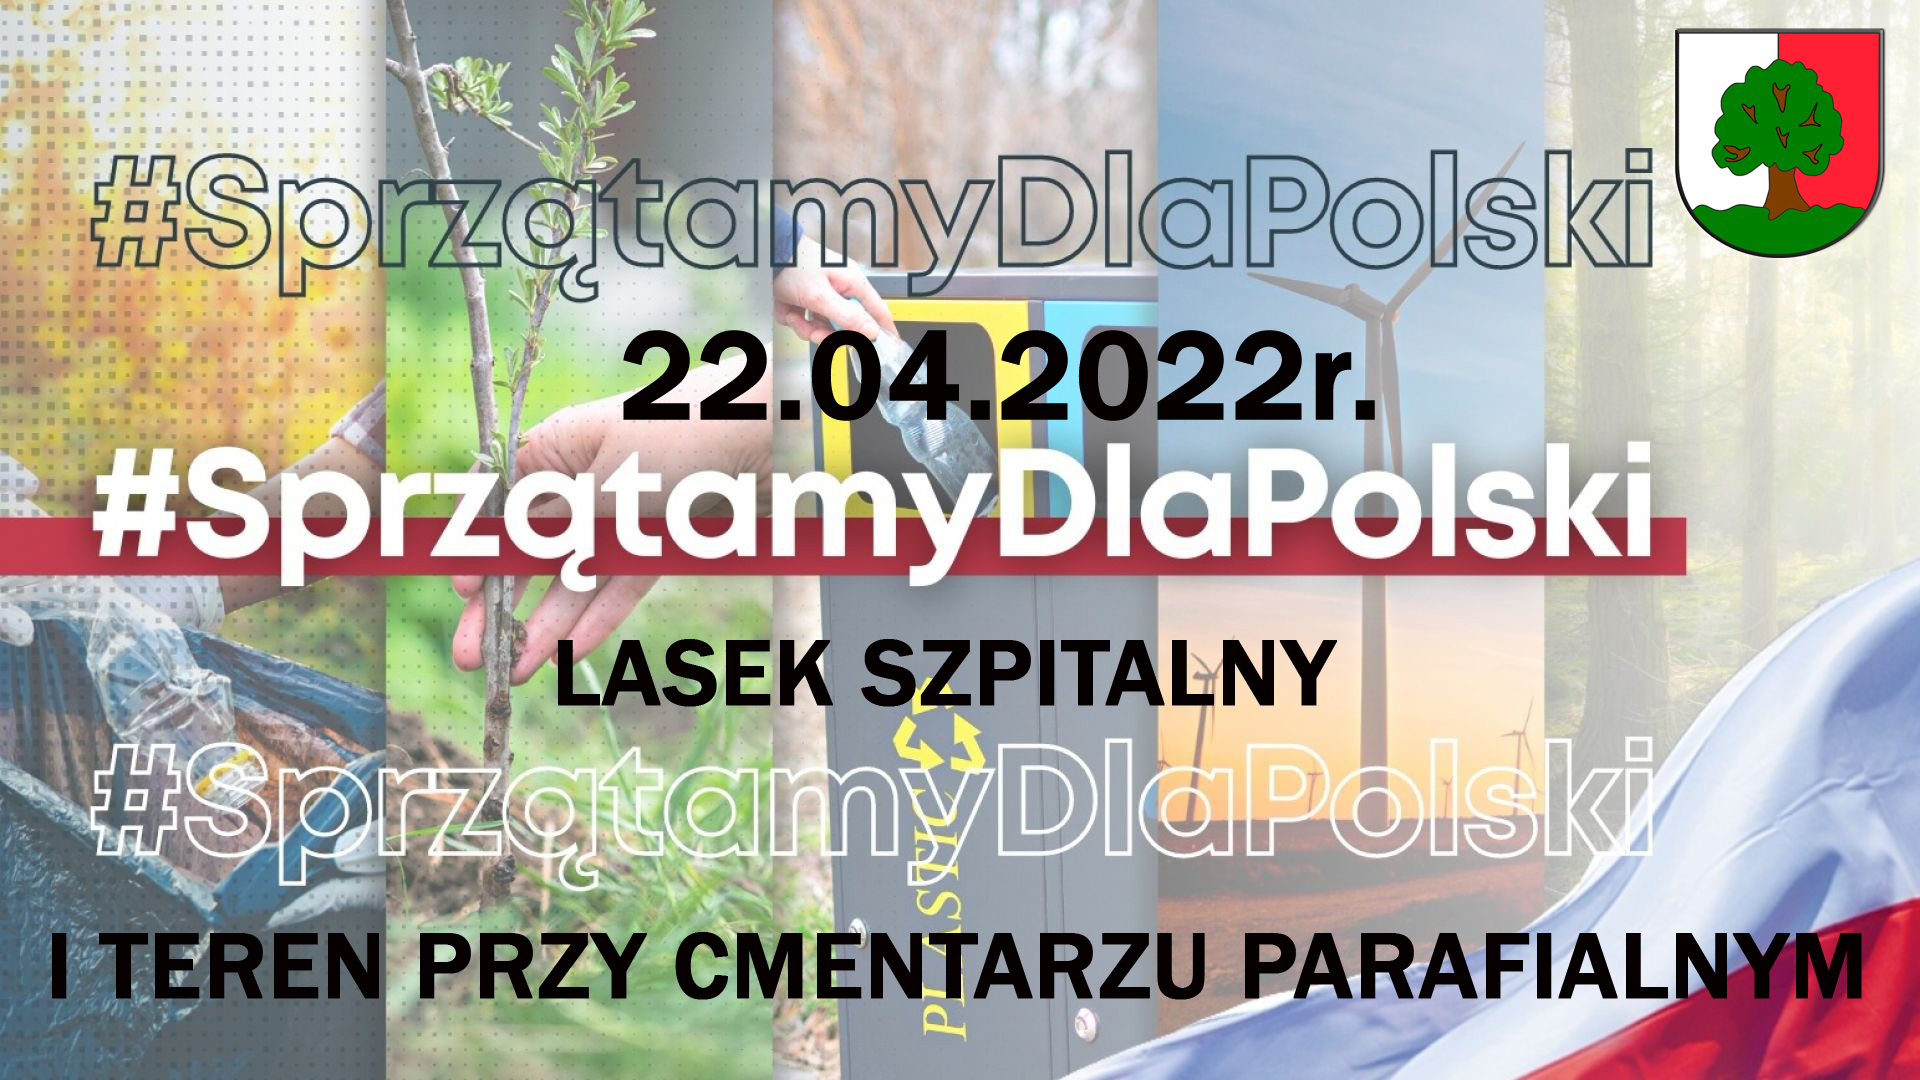 plakat informacyjny_Sprzątamy dla Polski